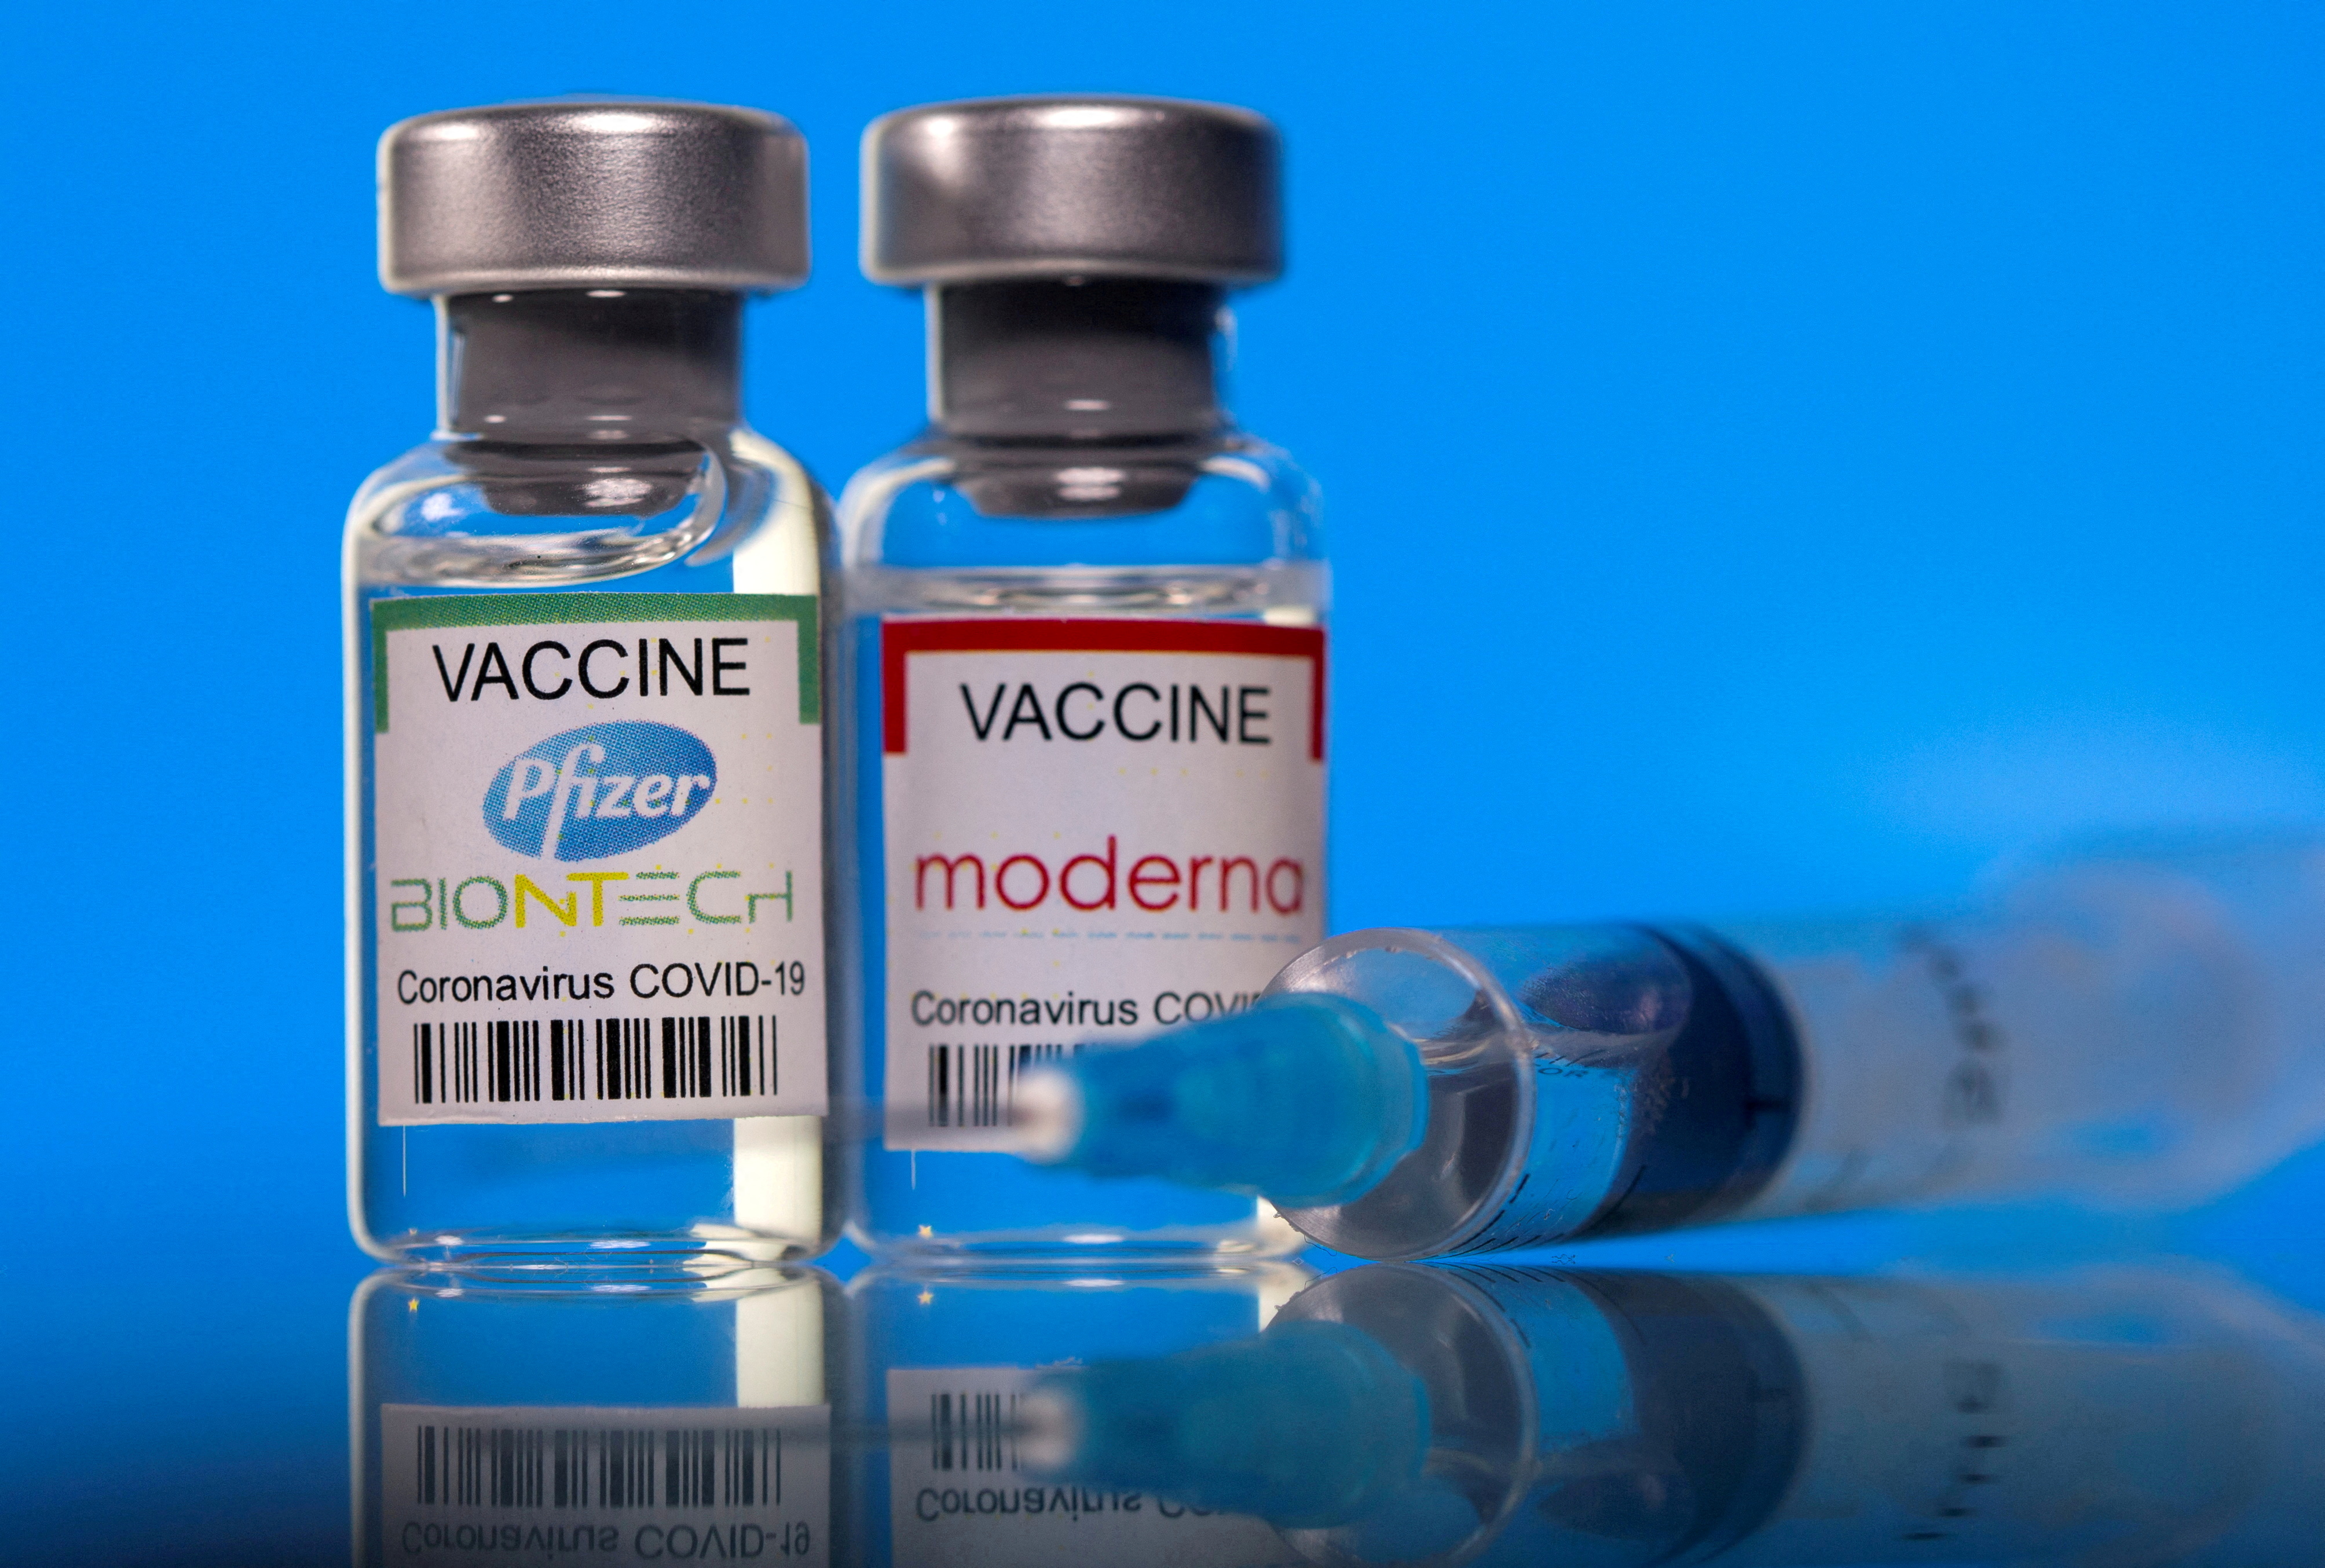 Ilustración de archivo de frascos con las etiquetas de la vacuna contra el COVID-19 de Pfizer-BioNTech y Moderna (REUTERS/Dado Ruvic)